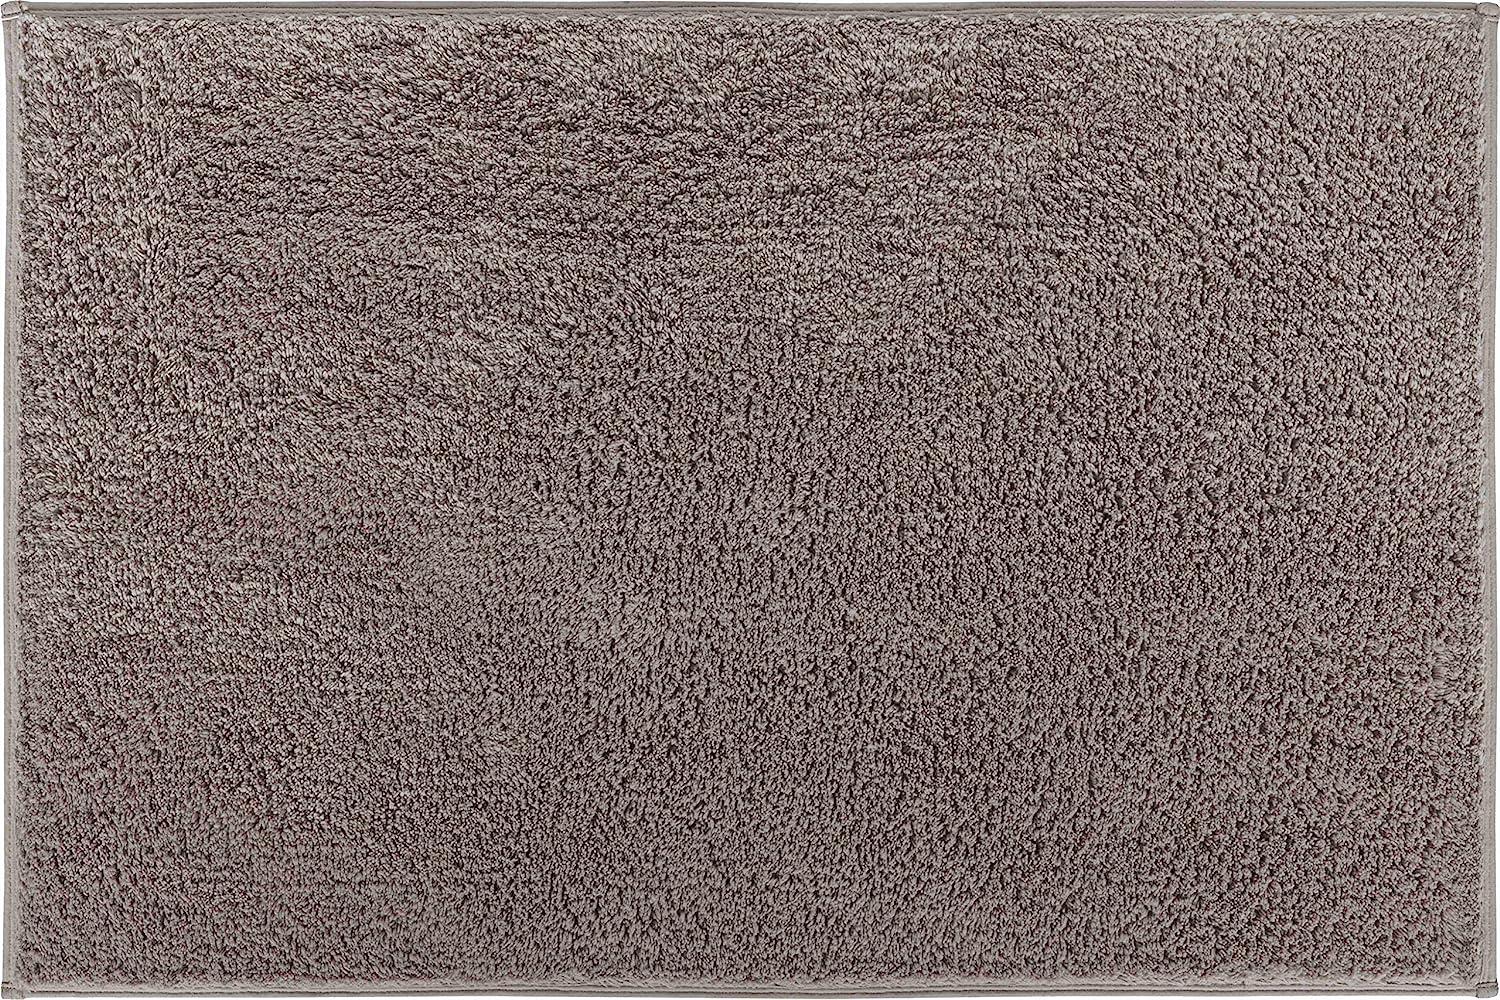 GRUND MARLA Badematte 60 x 90 cm Braun Bild 1